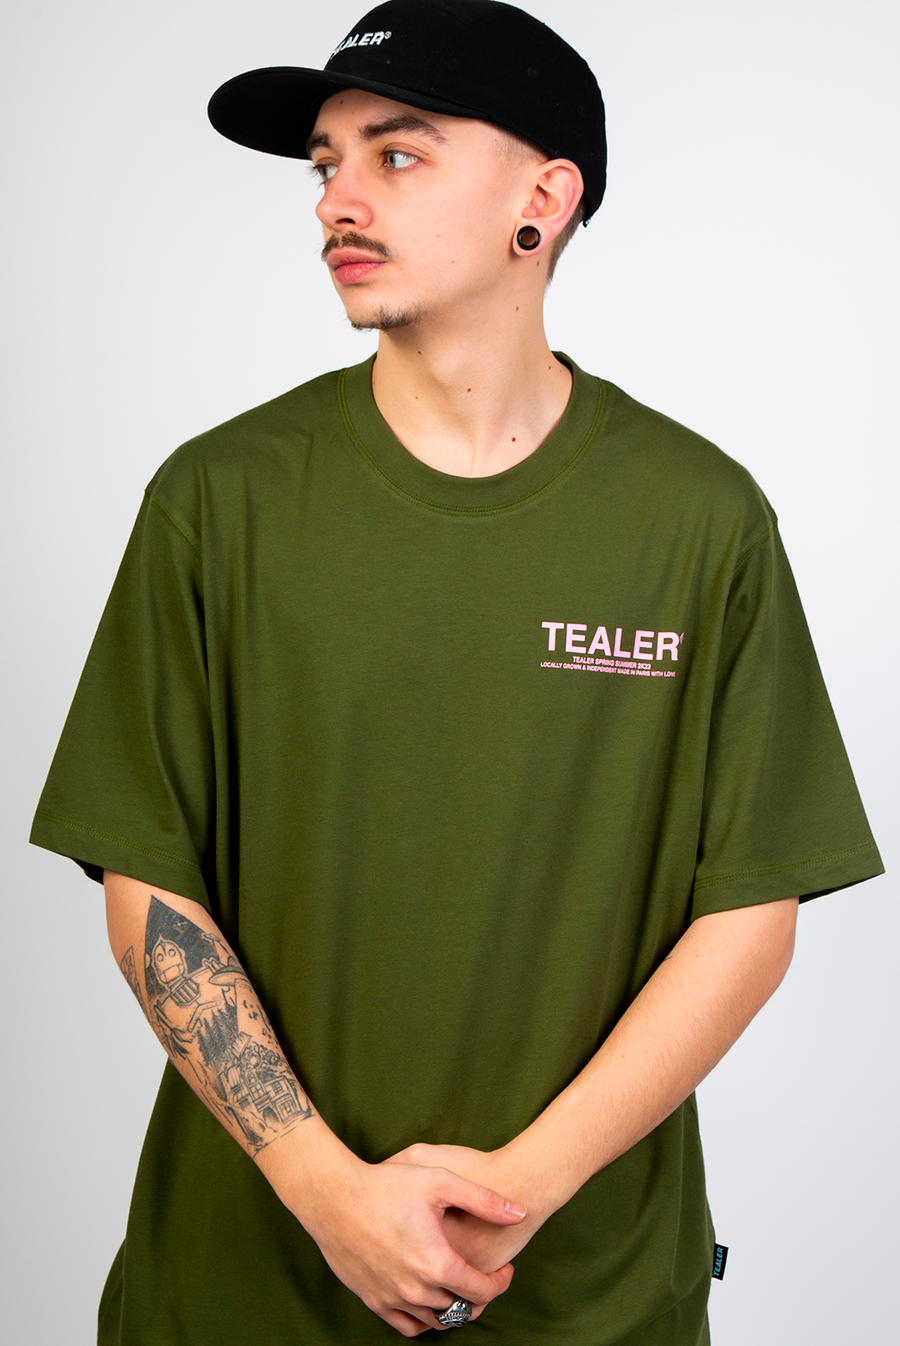 Tee-shirt Tealer Basic , Tee Khaki